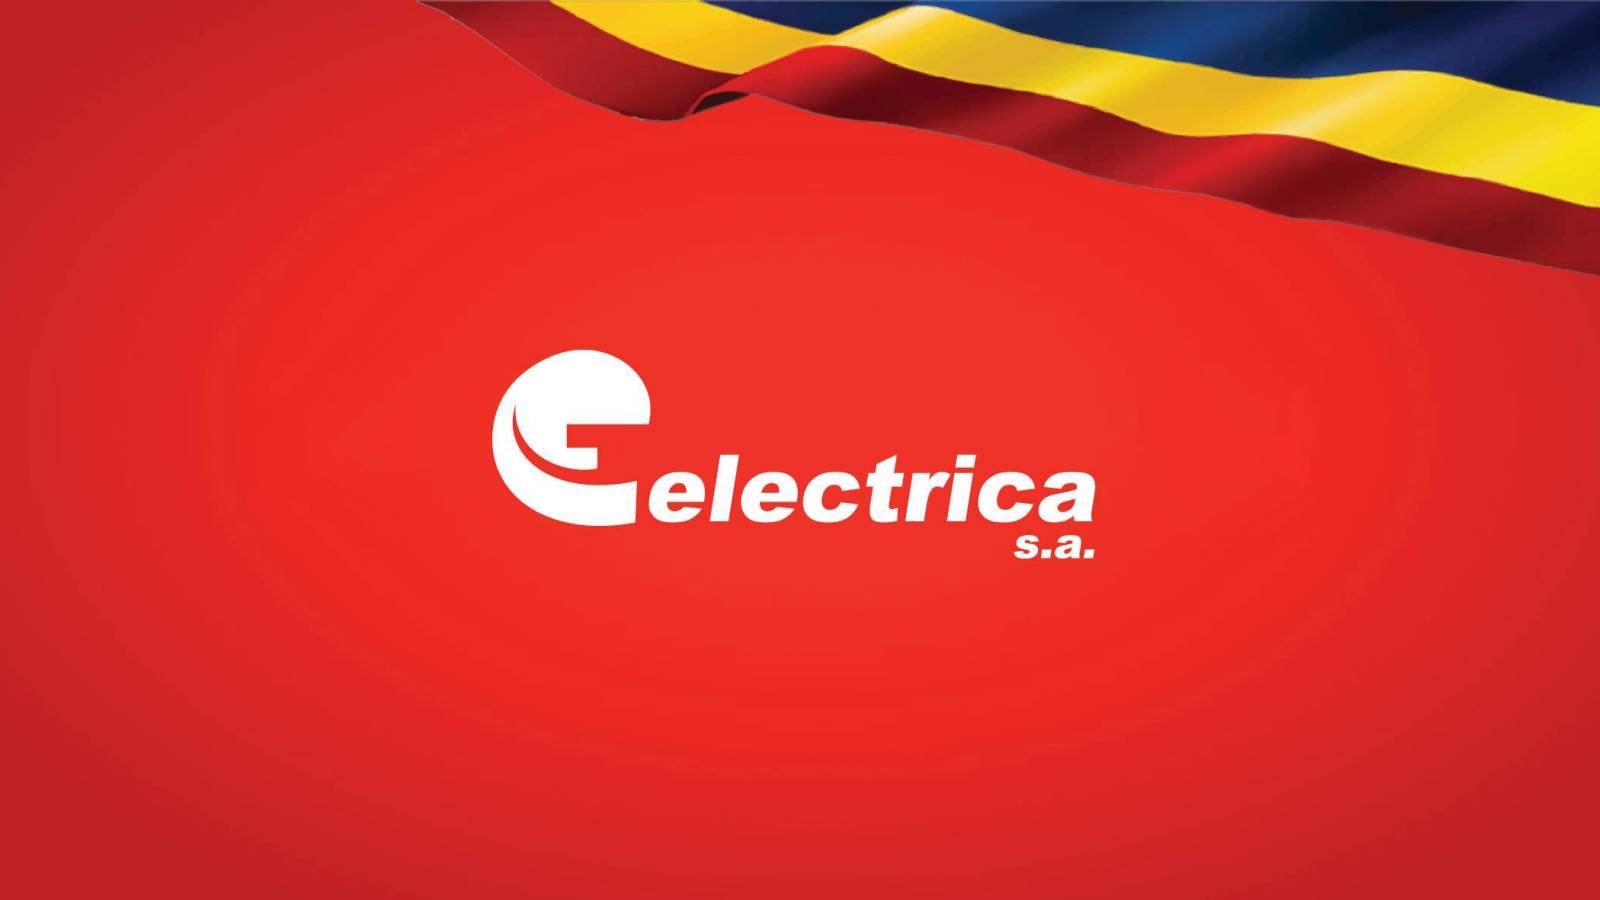 Electrica Datele ULTIM MOMENT Privire OBLIGATIA Toti Clientii Romania